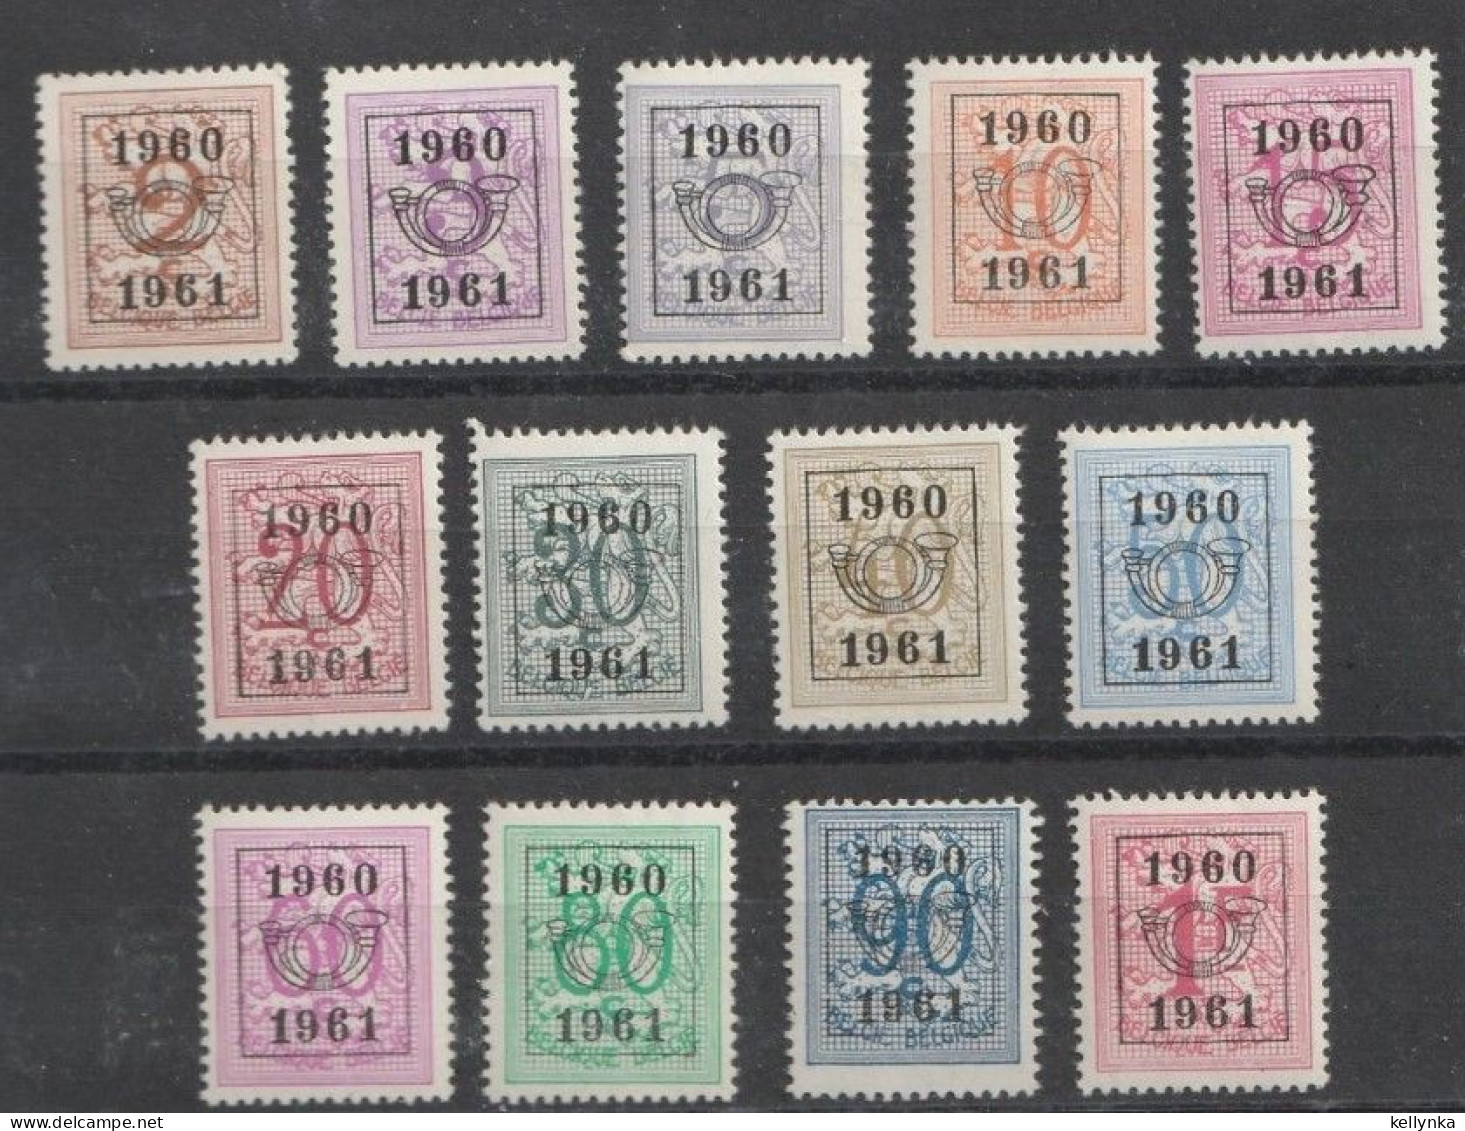 Belgique - Belgie - PRE699/711 - Préoblitérés - Série 53 - 1960 - MNH - Typos 1951-80 (Chiffre Sur Lion)